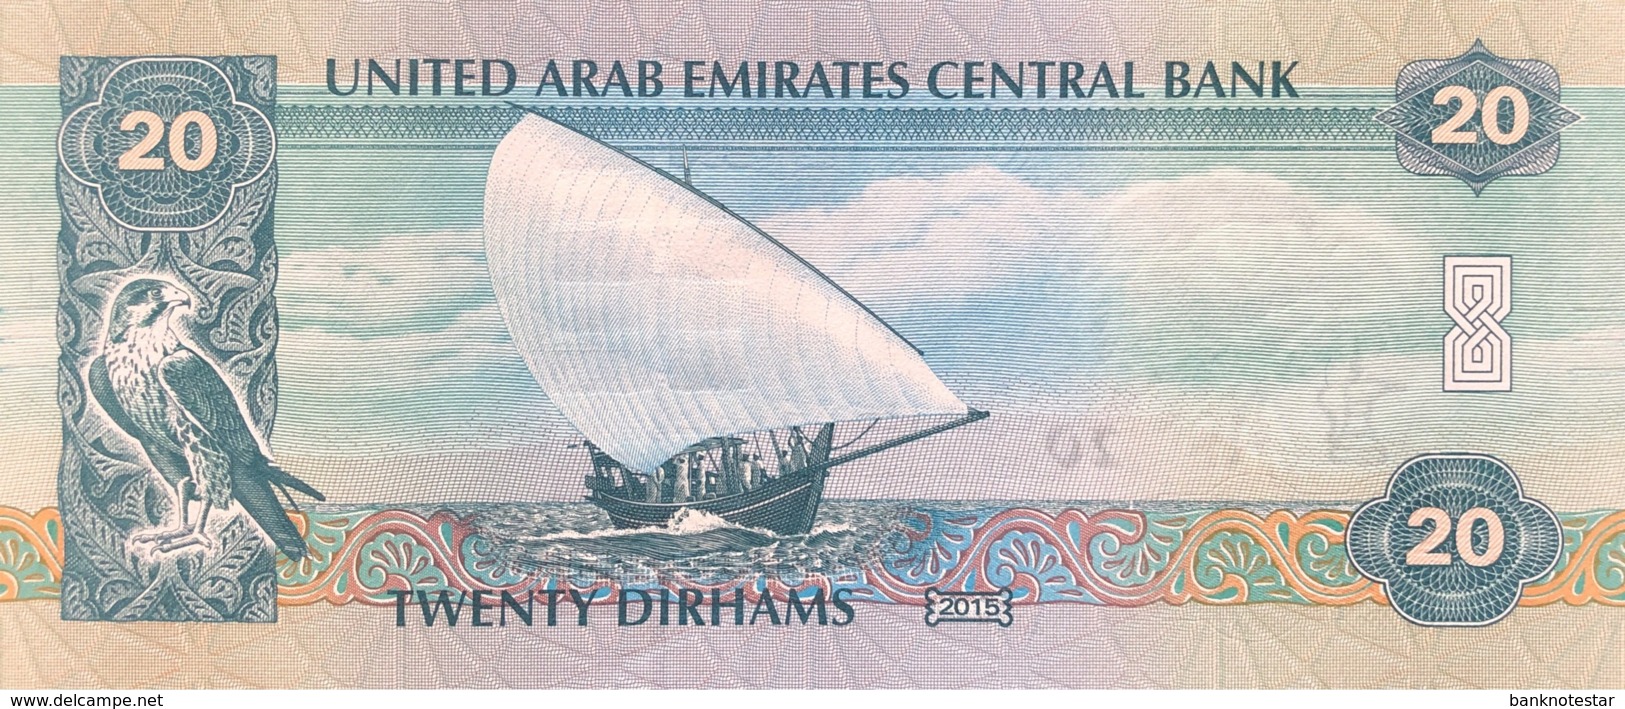 United Arab Emirates 20 Dirham, P-28 (2015) - UNC - Emiratos Arabes Unidos